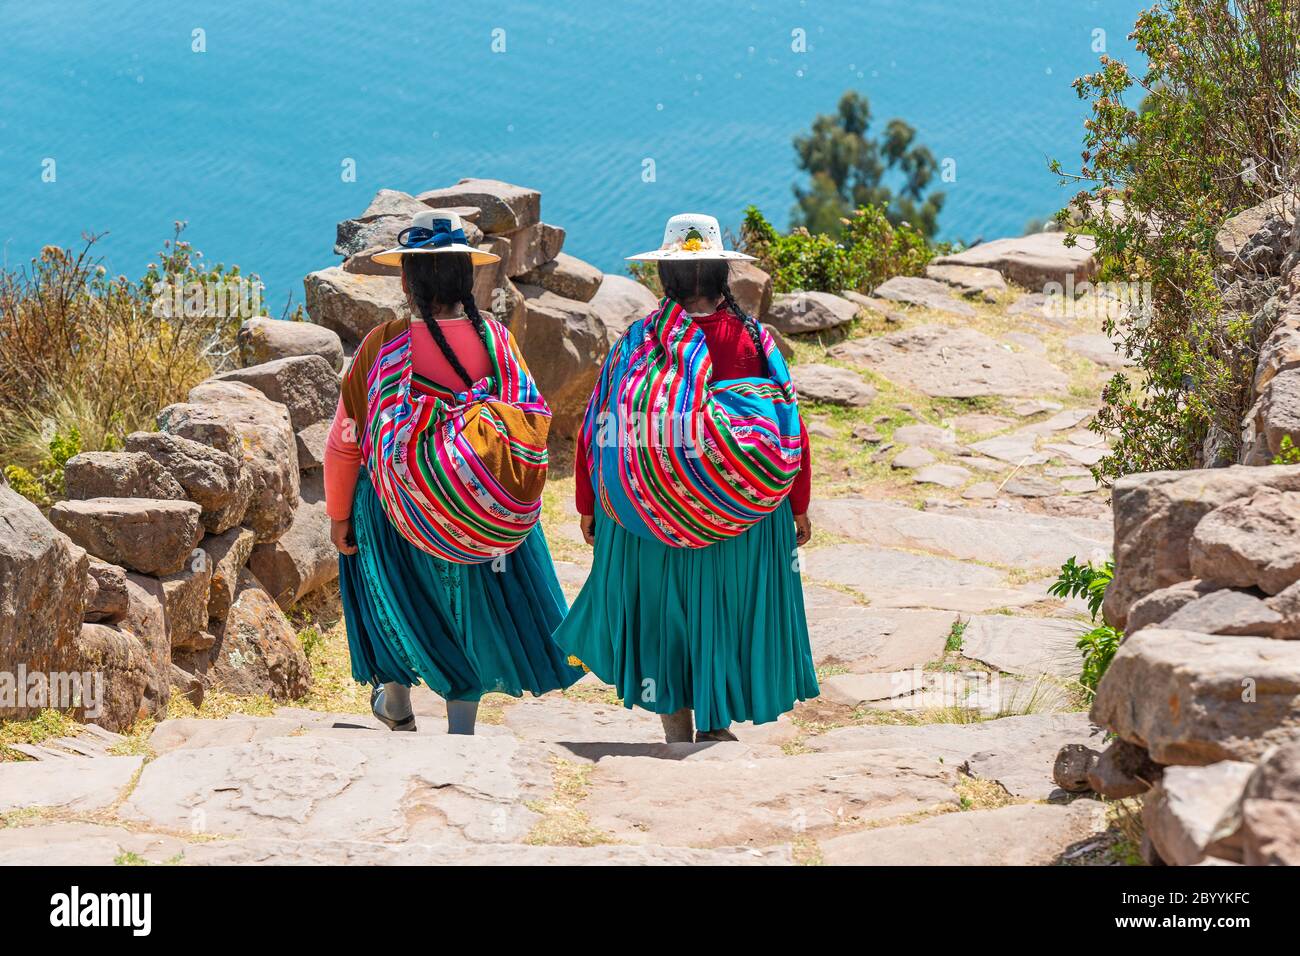 Zwei einheimische peruanische Quechua-Frauen in traditioneller Kleidung gehen die Treppe hinunter zum Hafen der Taquile-Insel, Titicaca-See, Peru. Stockfoto